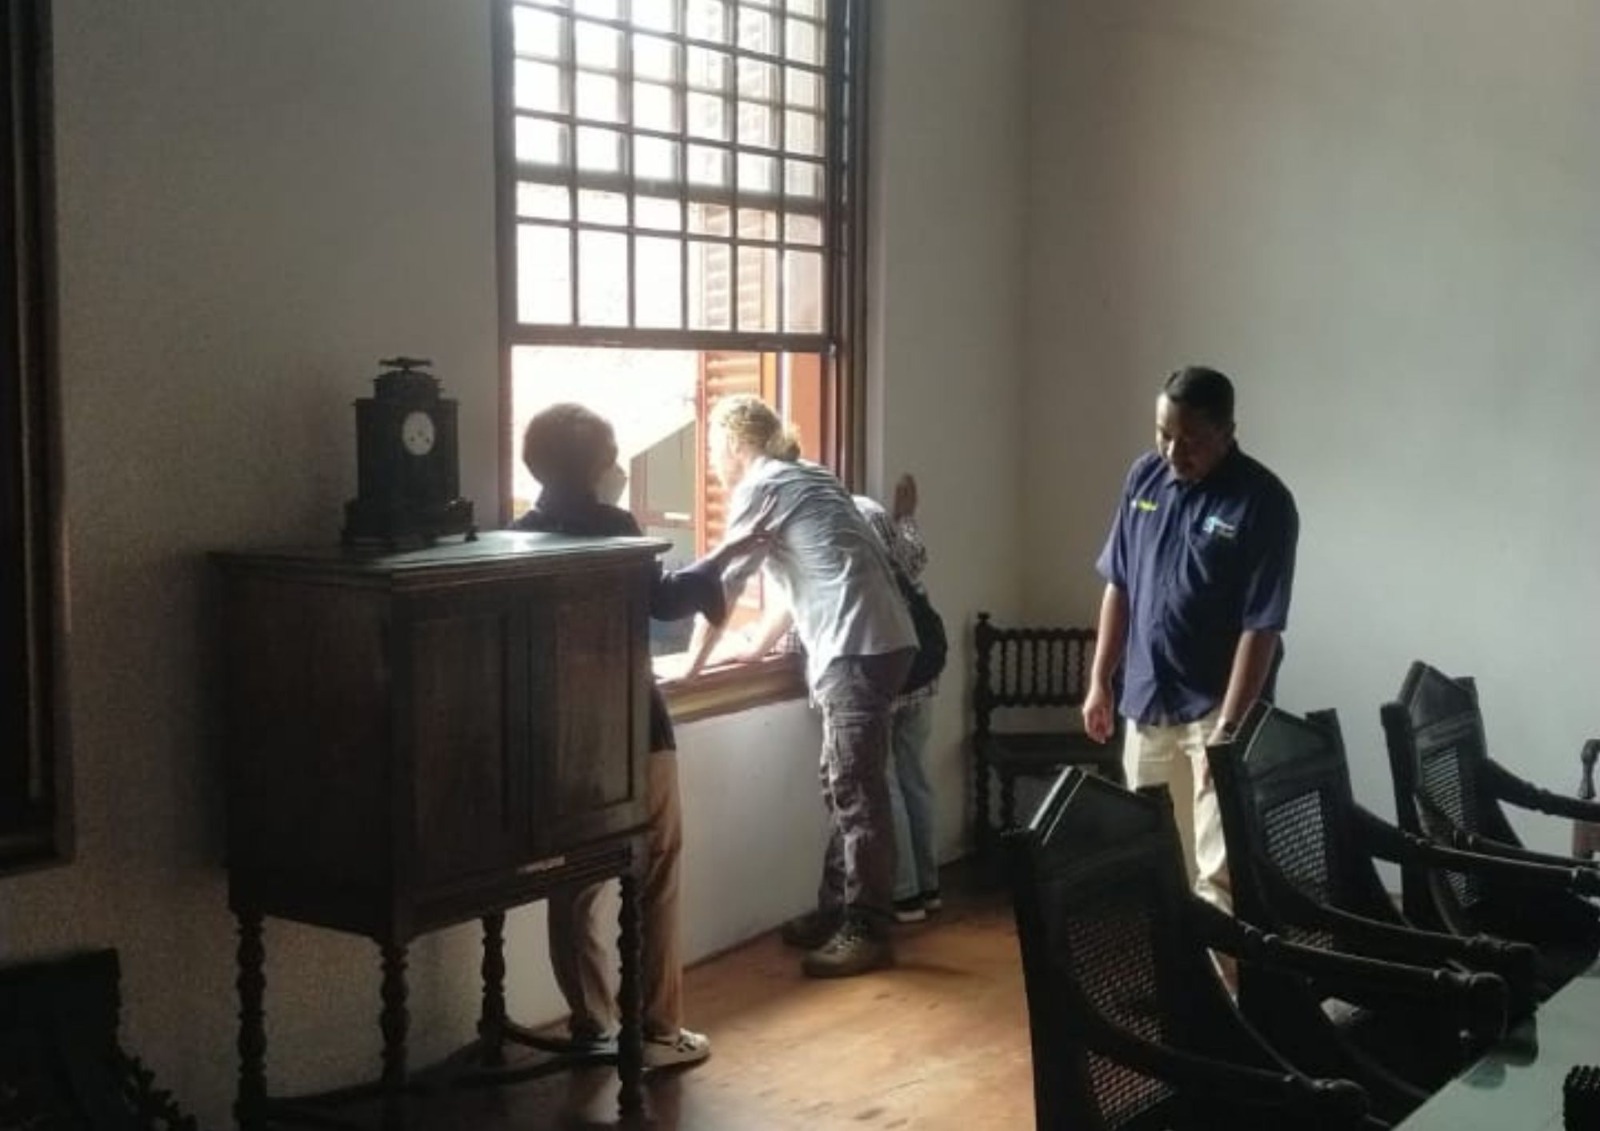 Pusdipres menerima kunjungan dari Peneliti Furnitur di Museum Sejarah Jakarta